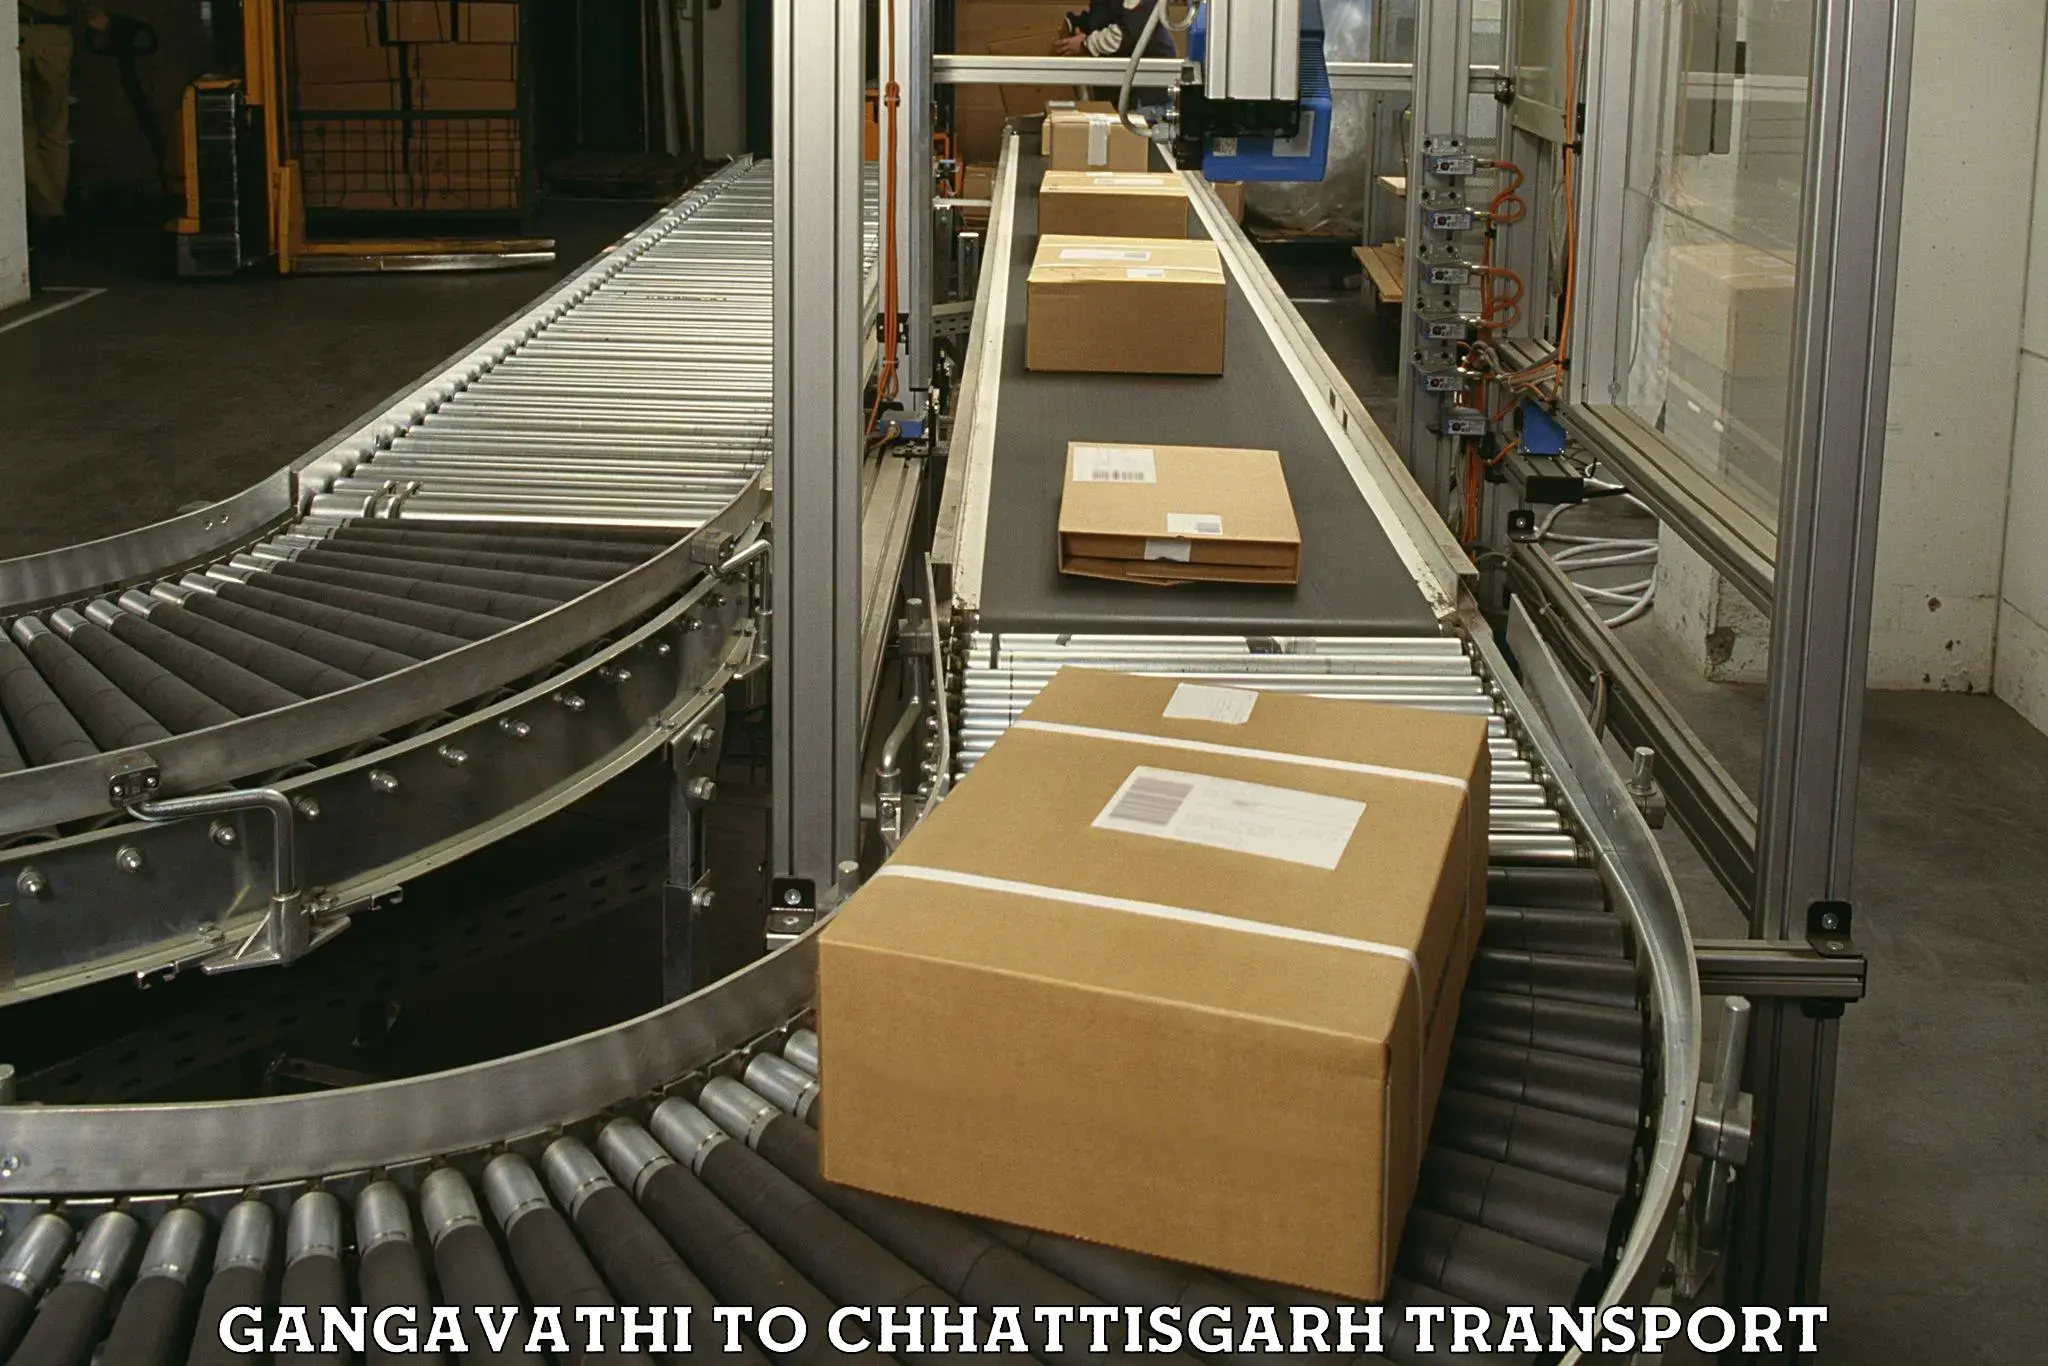 Luggage transport services Gangavathi to Bargidih